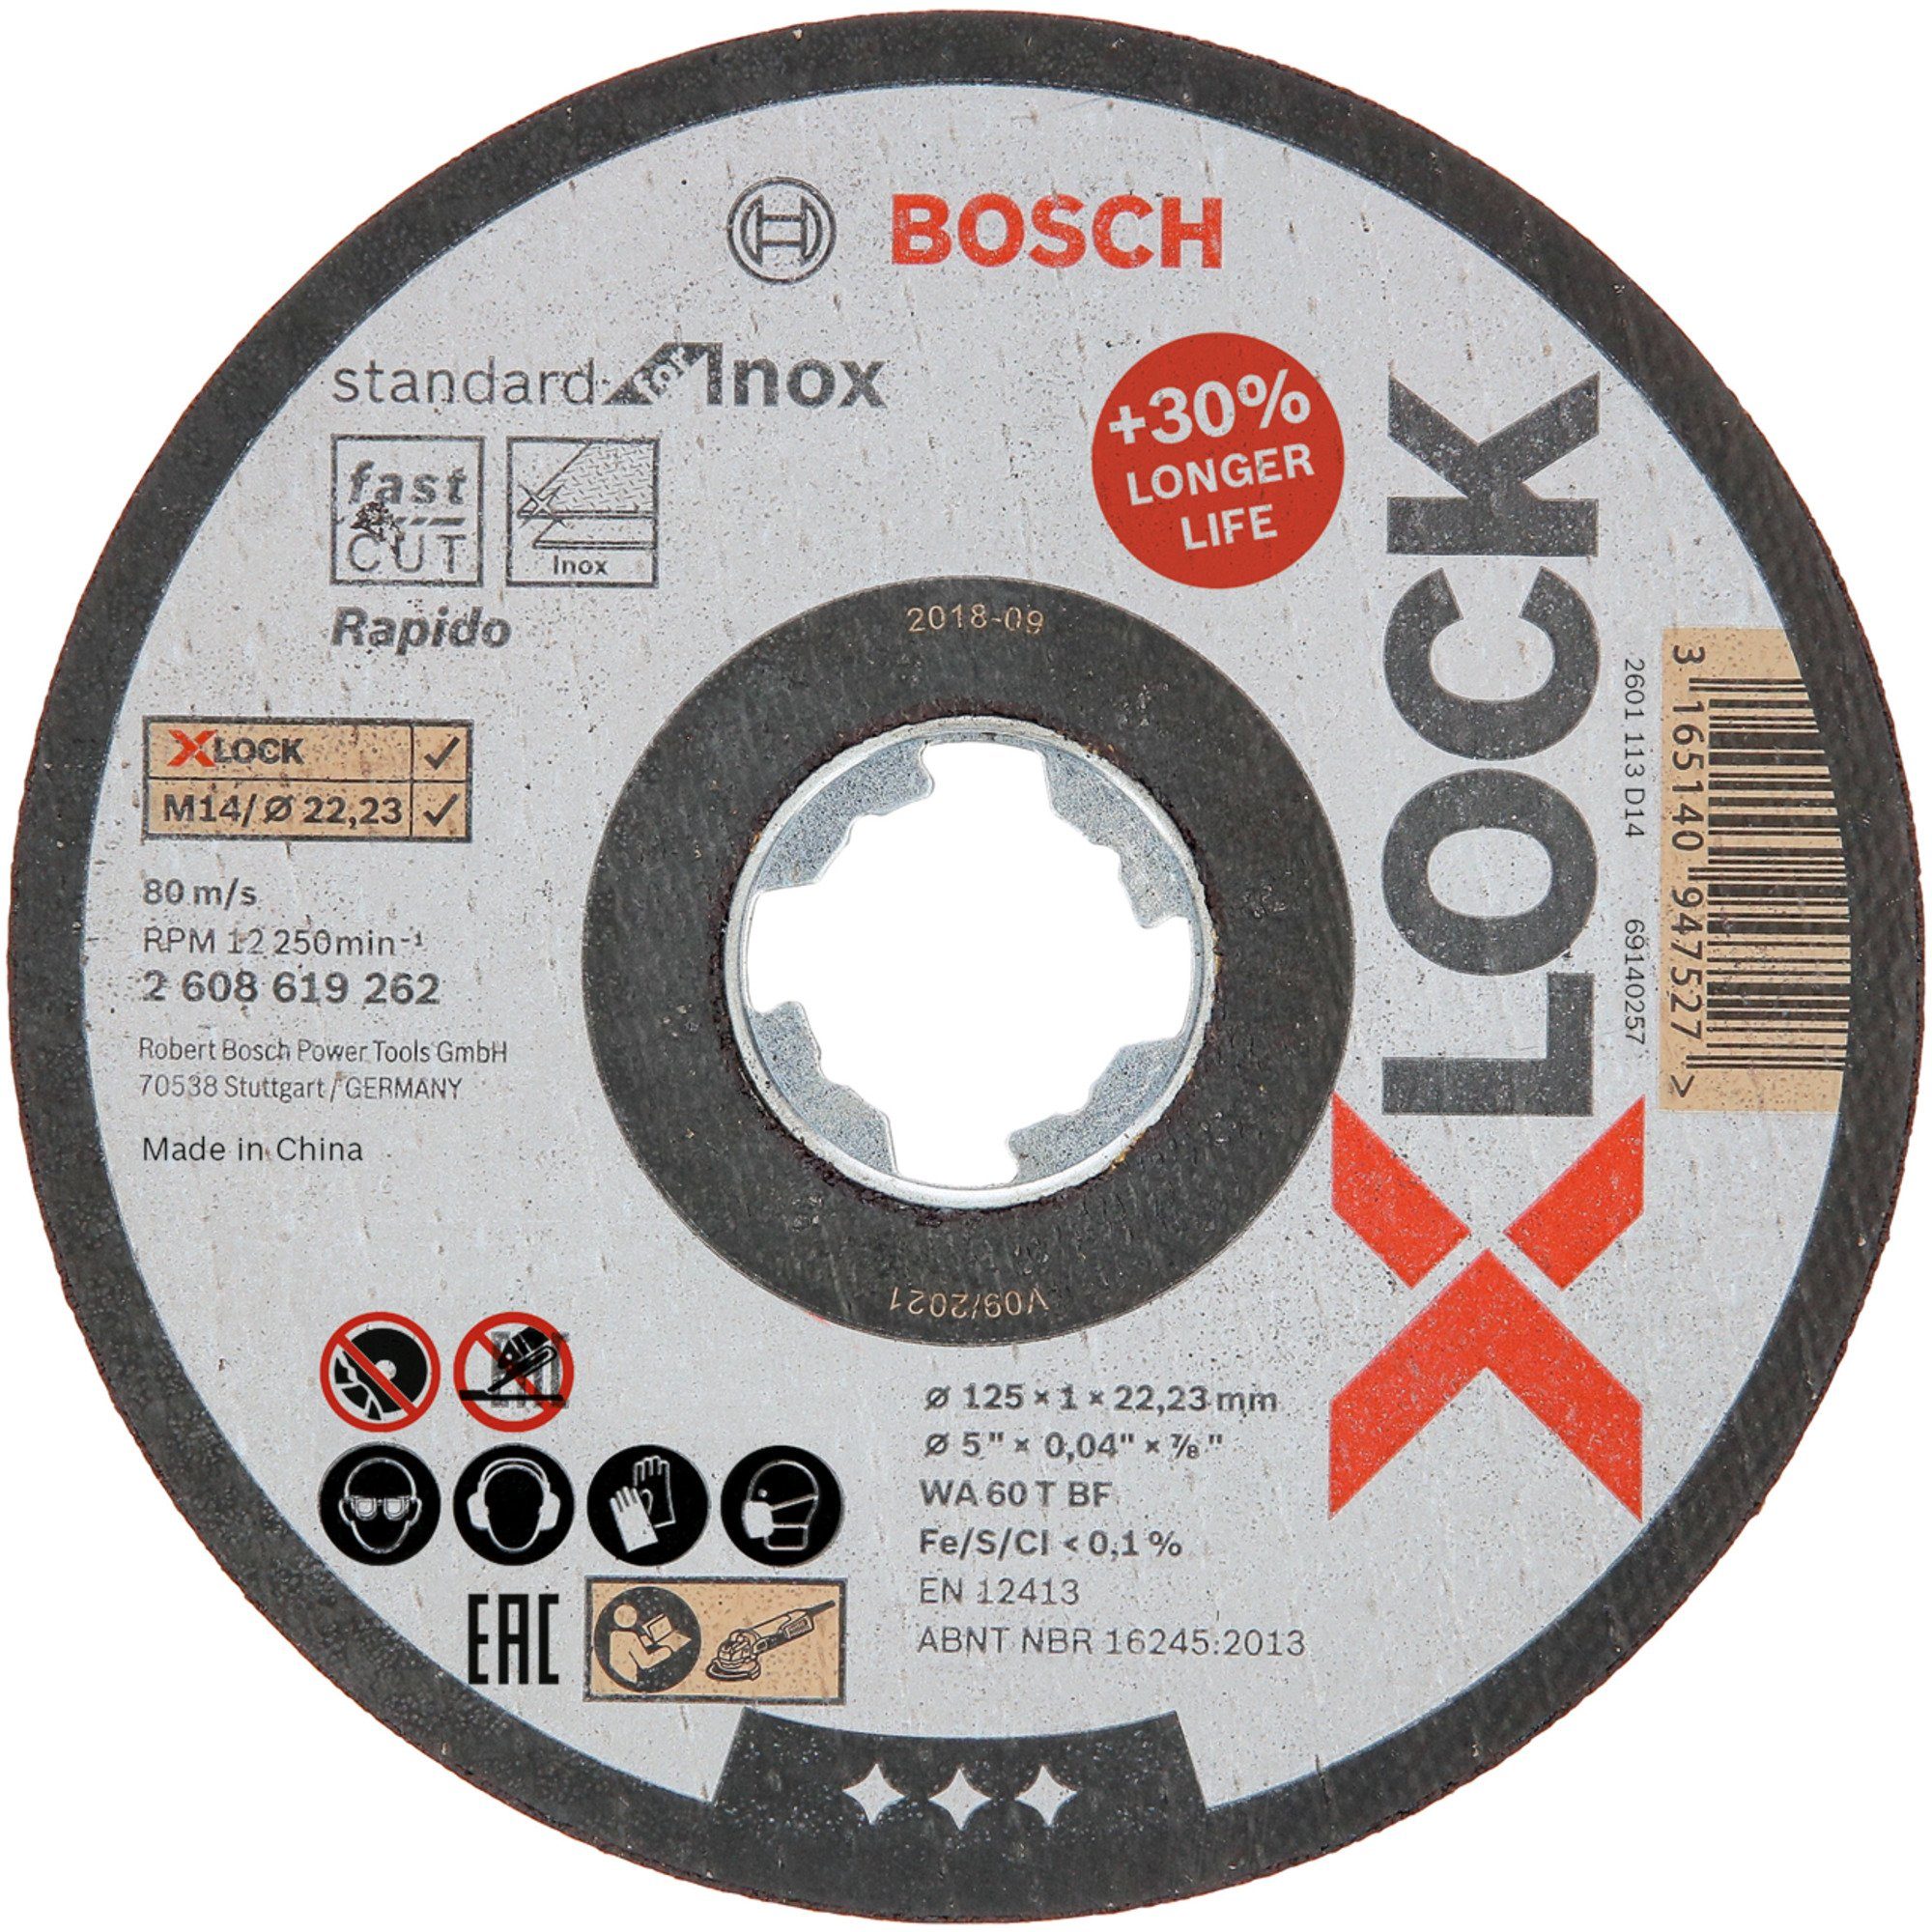 BOSCH Trennscheibe X-LOCK Trennscheibe Standard for Inox - Rapido, Ø 125mm